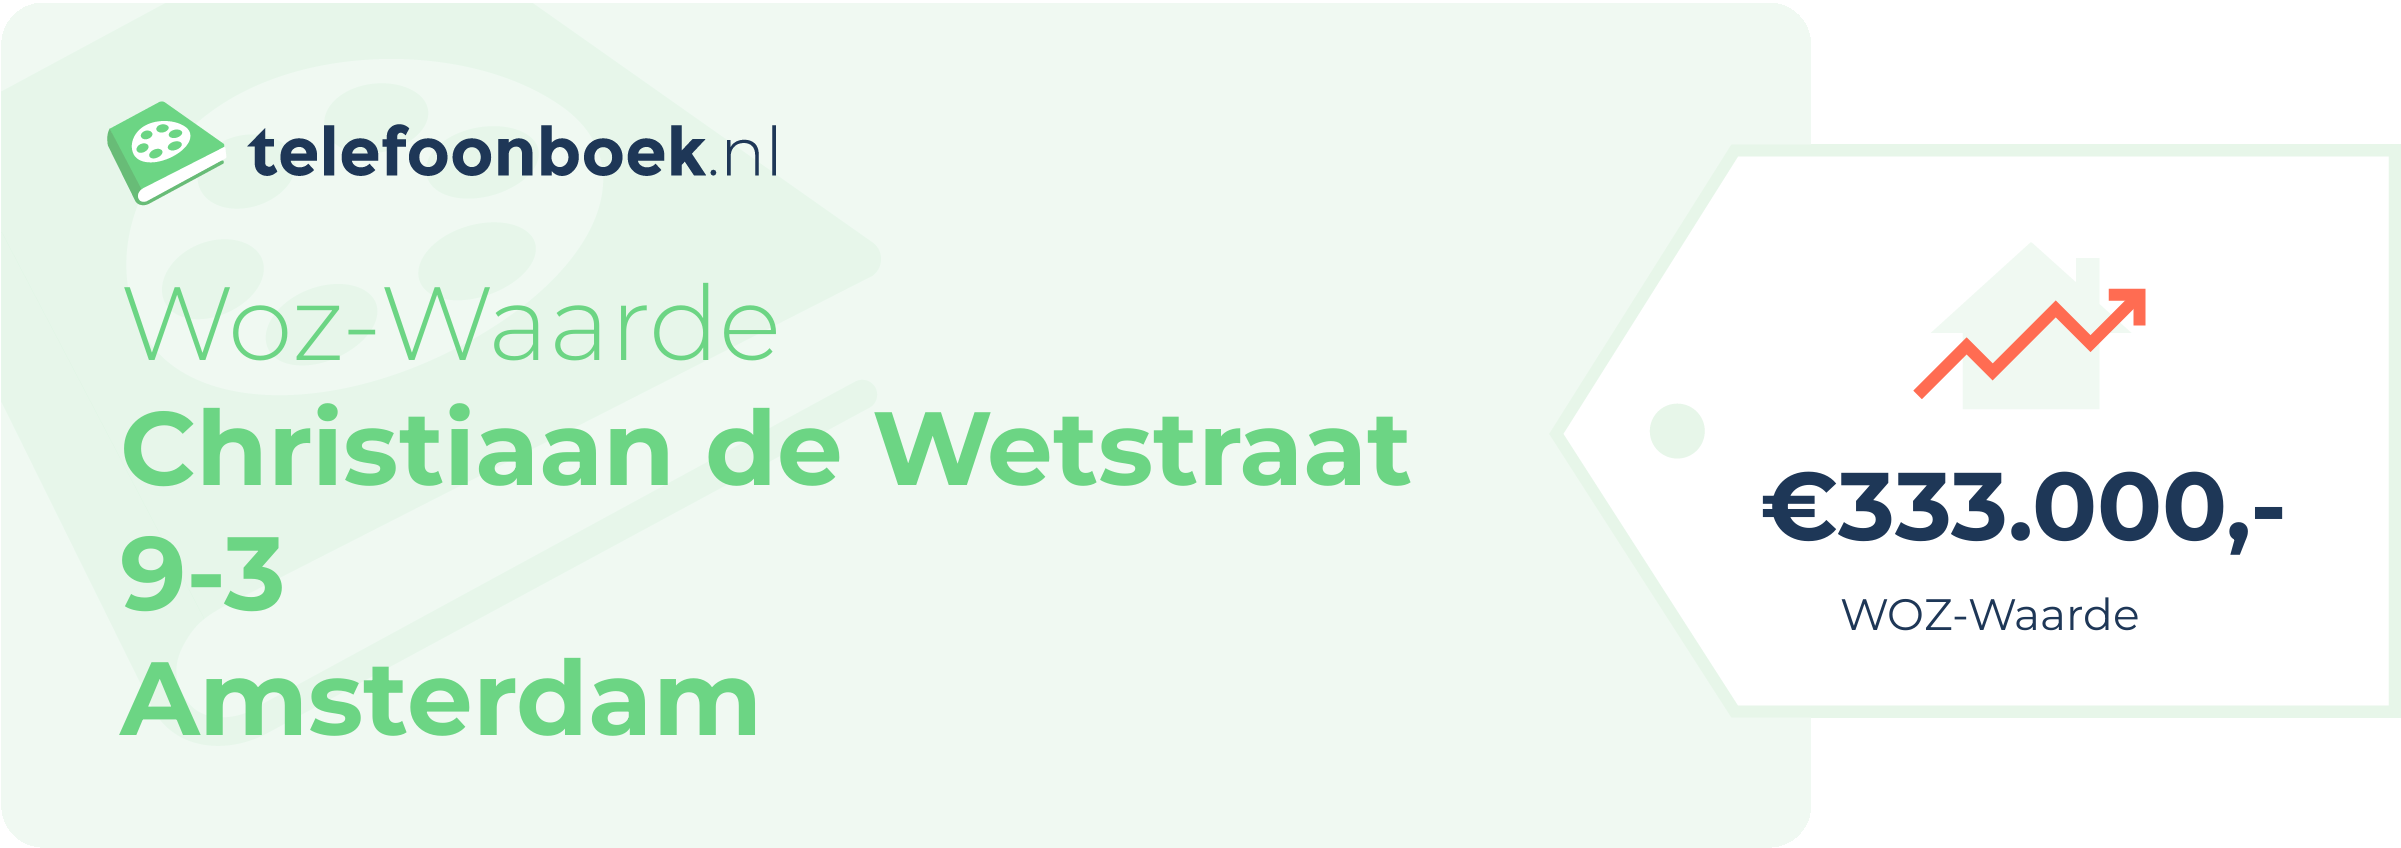 WOZ-waarde Christiaan De Wetstraat 9-3 Amsterdam